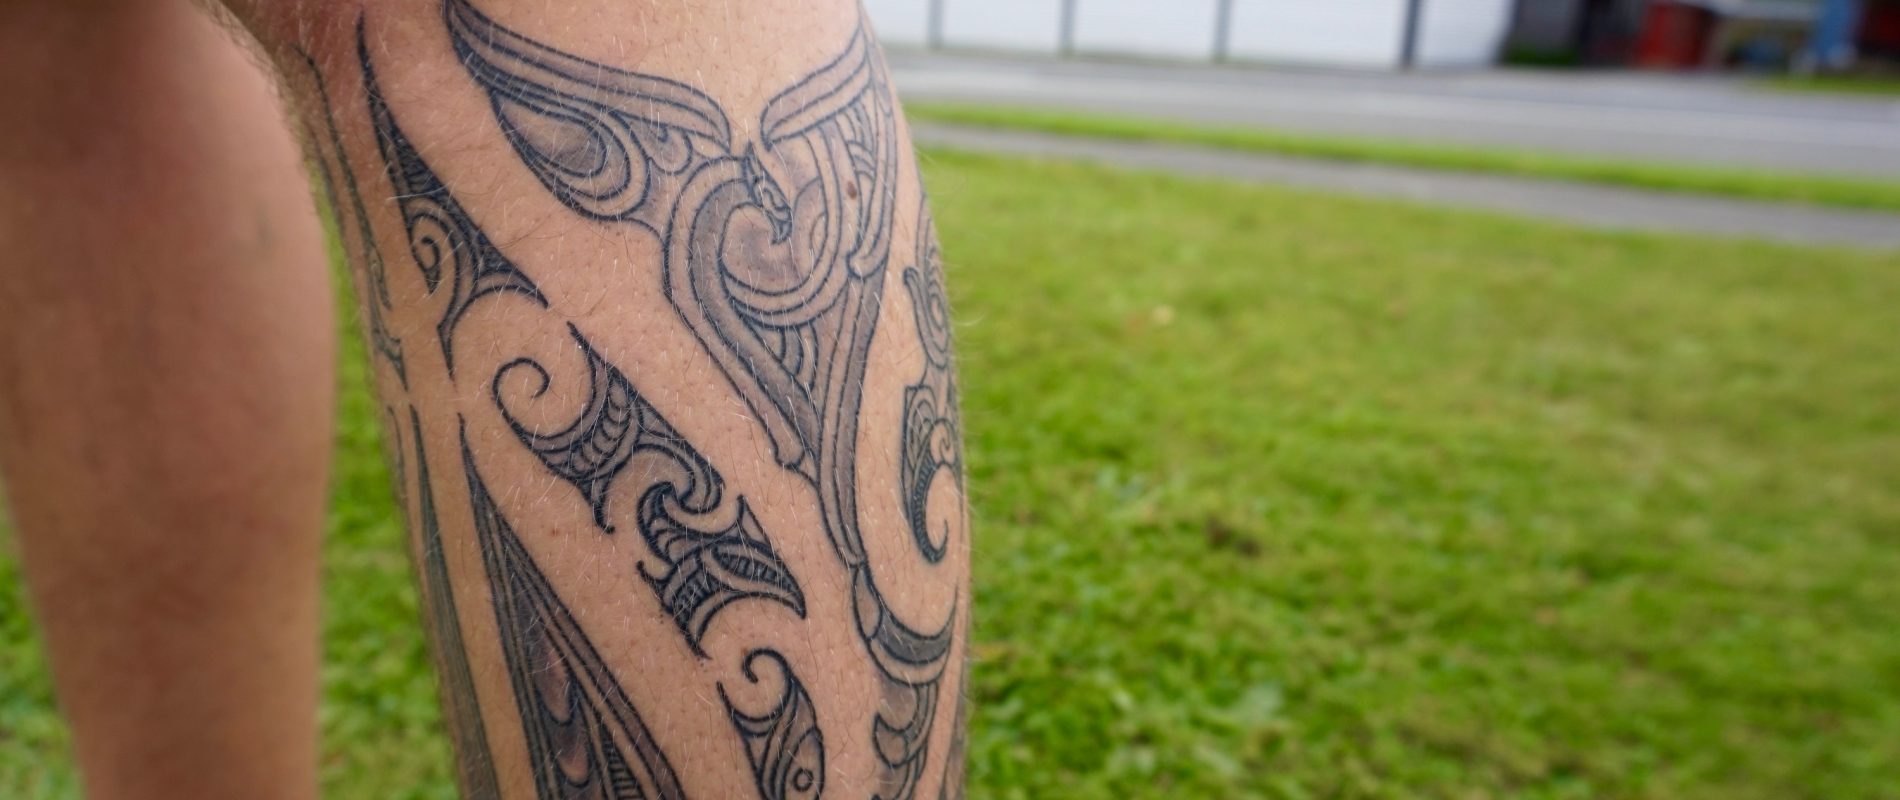 The Last of Us 2 Tattoo  Tattoos, Fern tattoo, Tattoo project